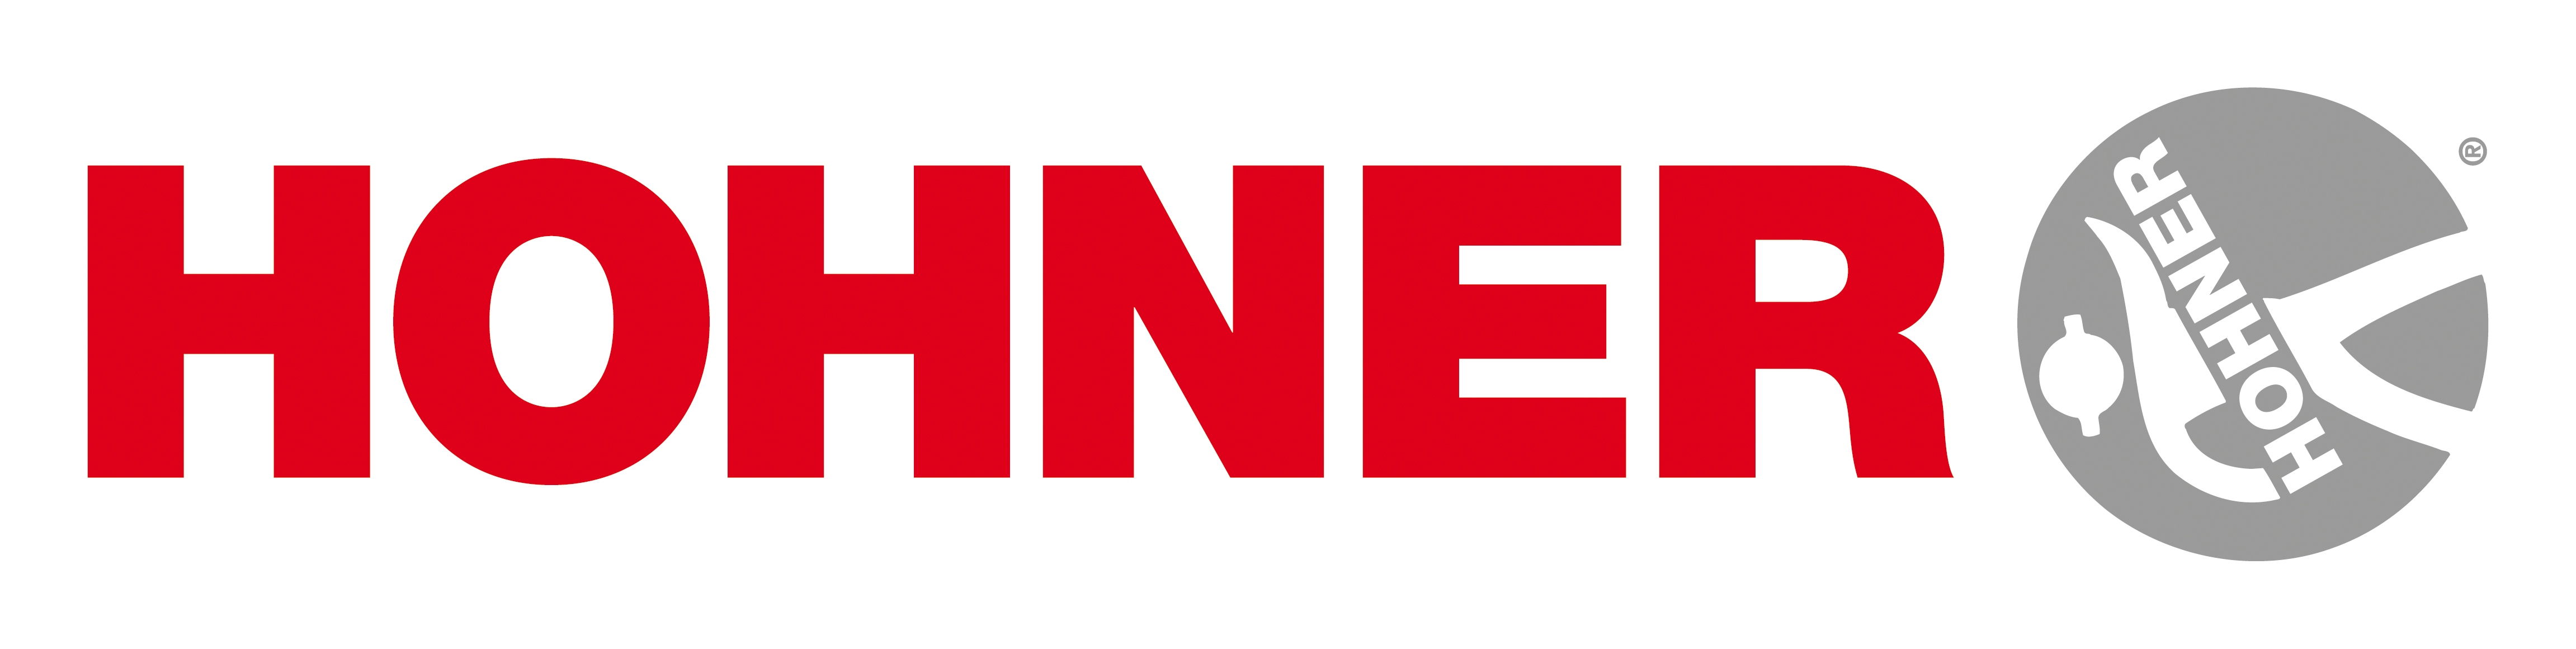 Hohner Logo photo - 1